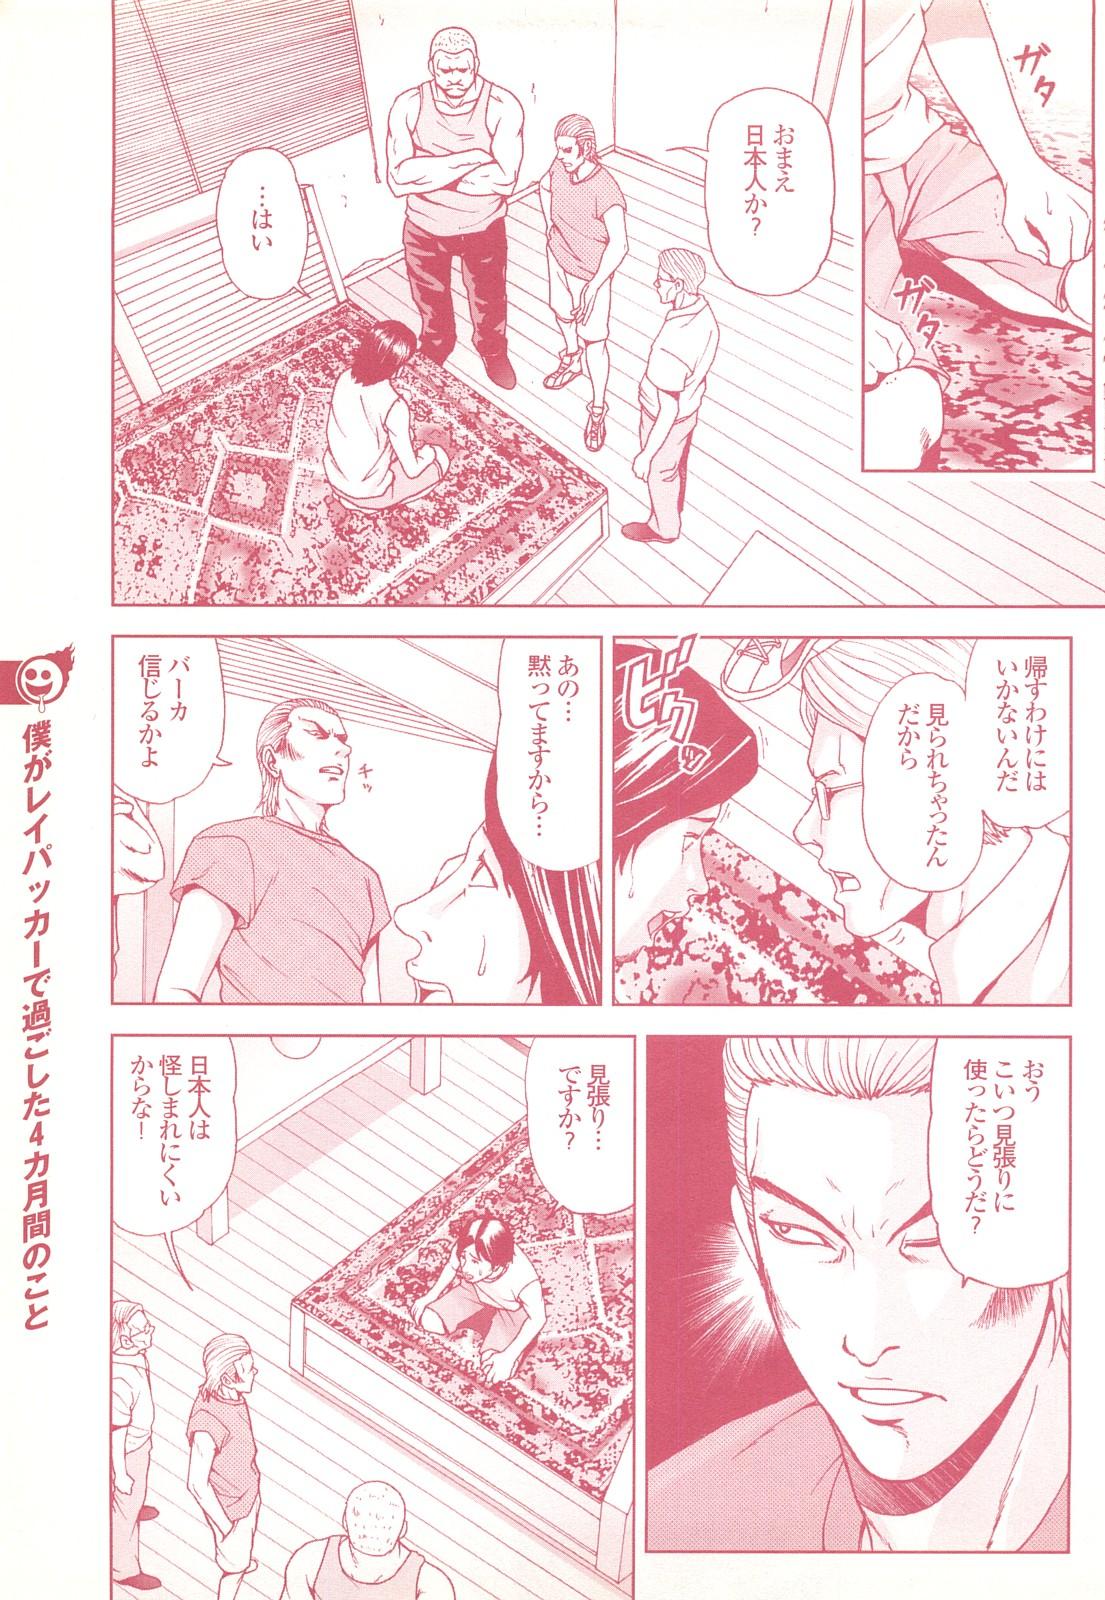 コミック裏モノJAPAN Vol.18 今井のりたつスペシャル号 128